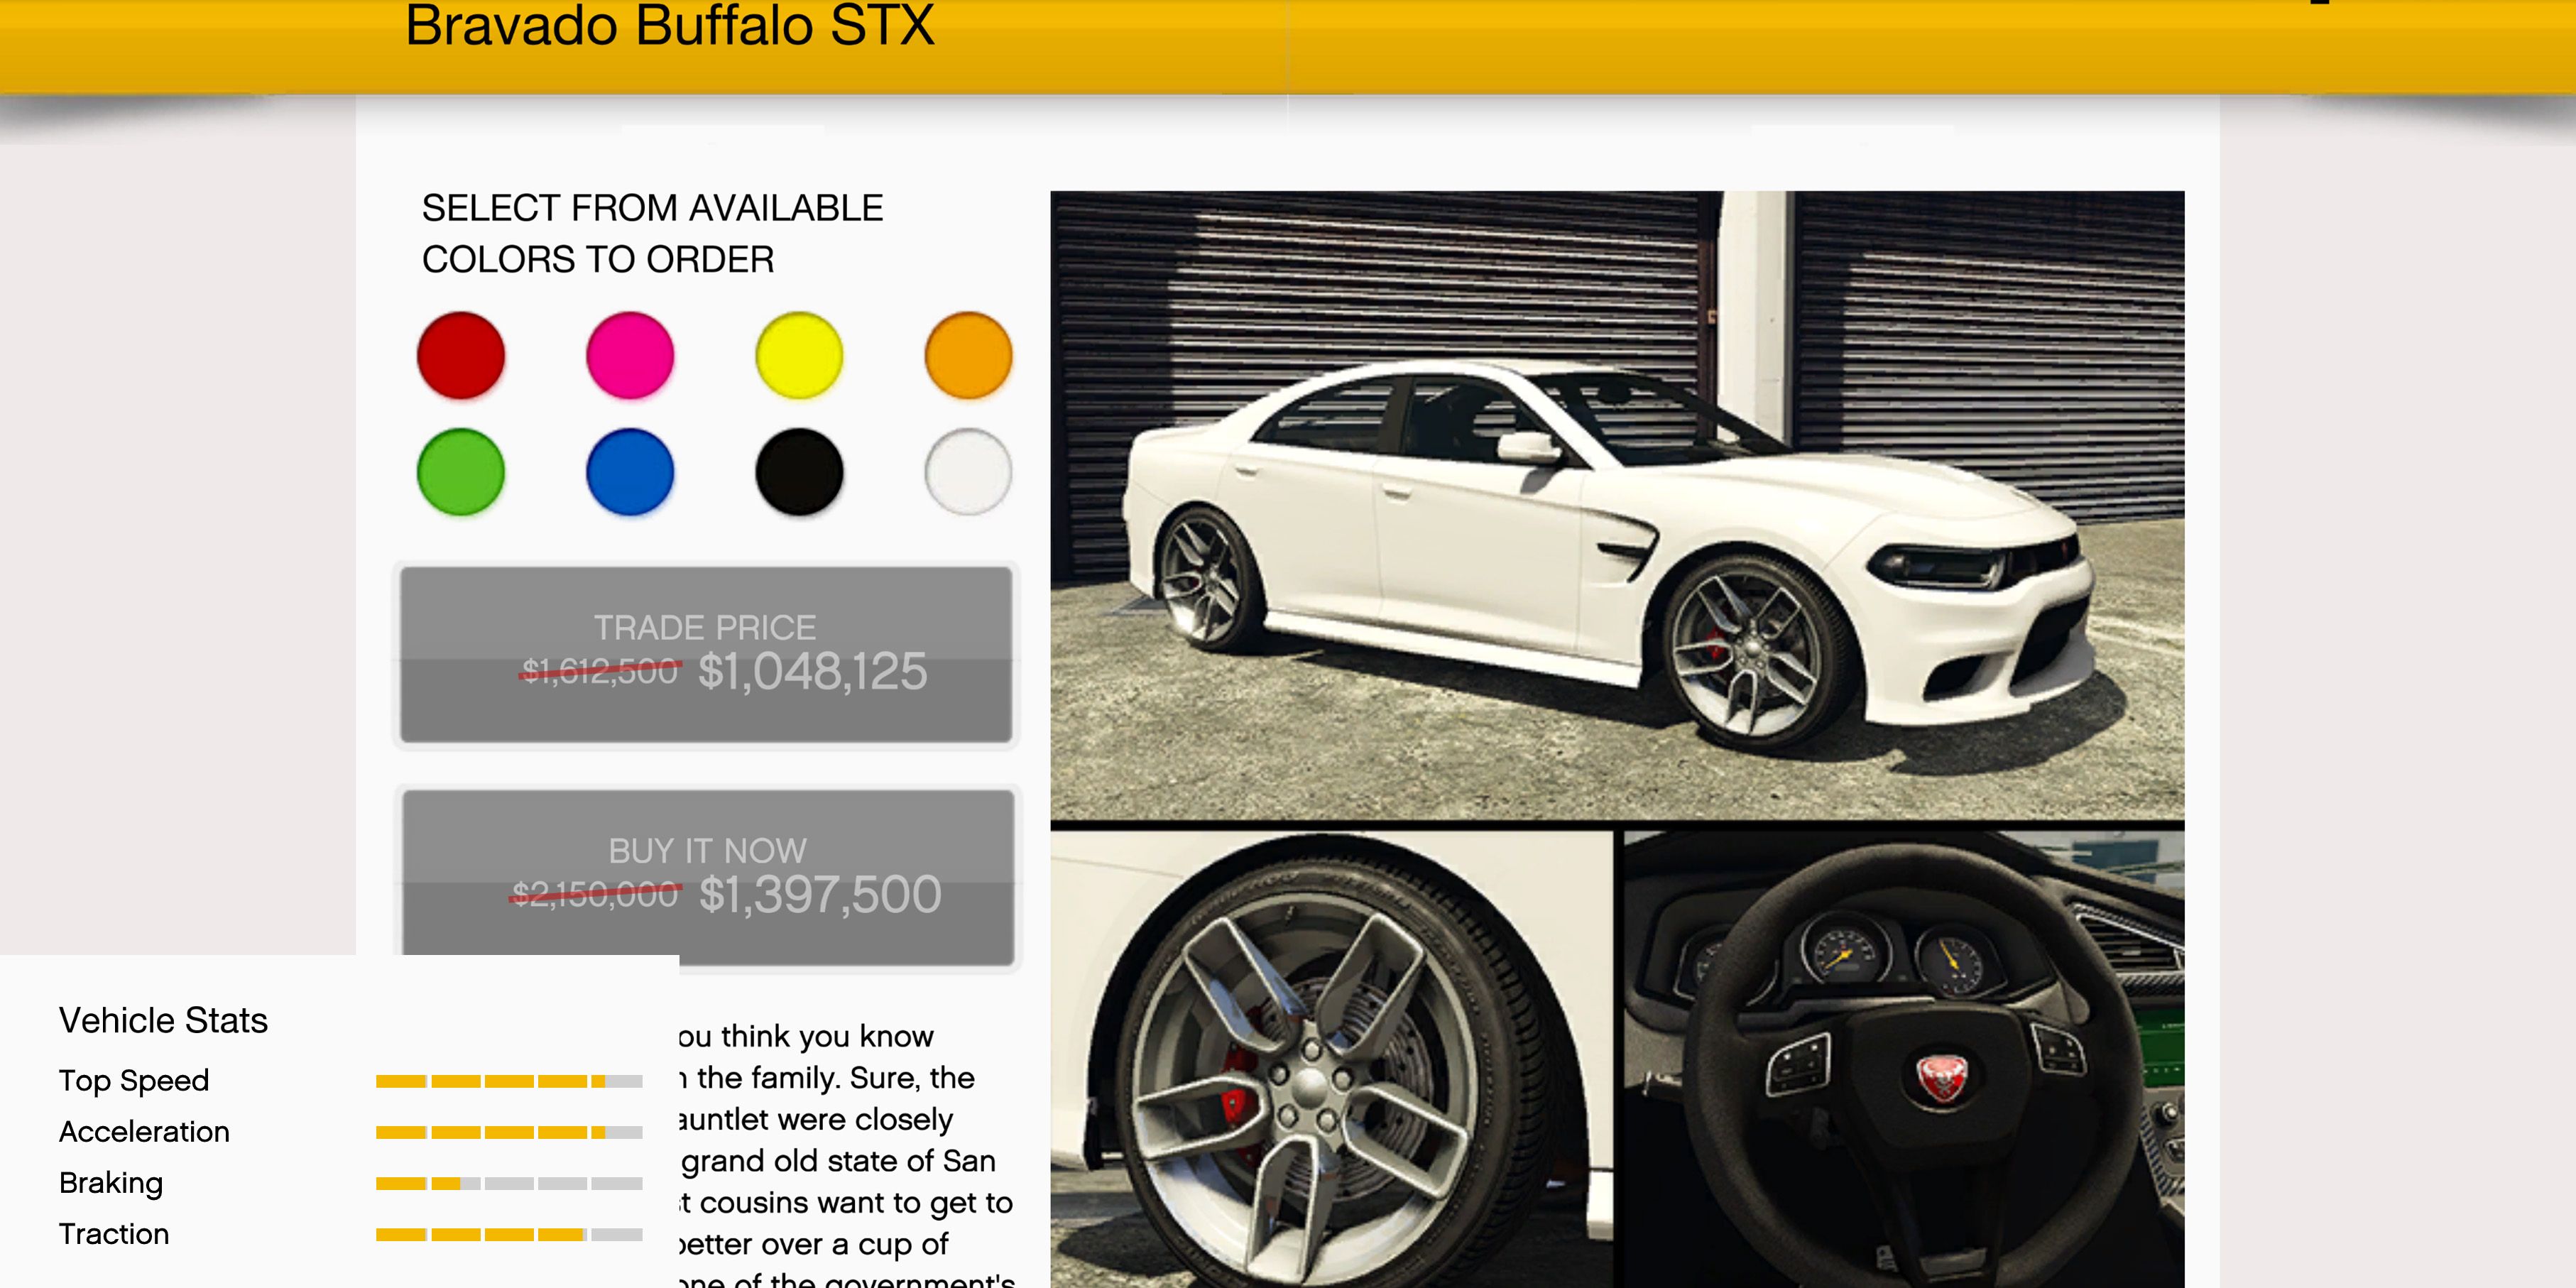 Un Bravado Buffalo STX blanco a la venta en GTA Online